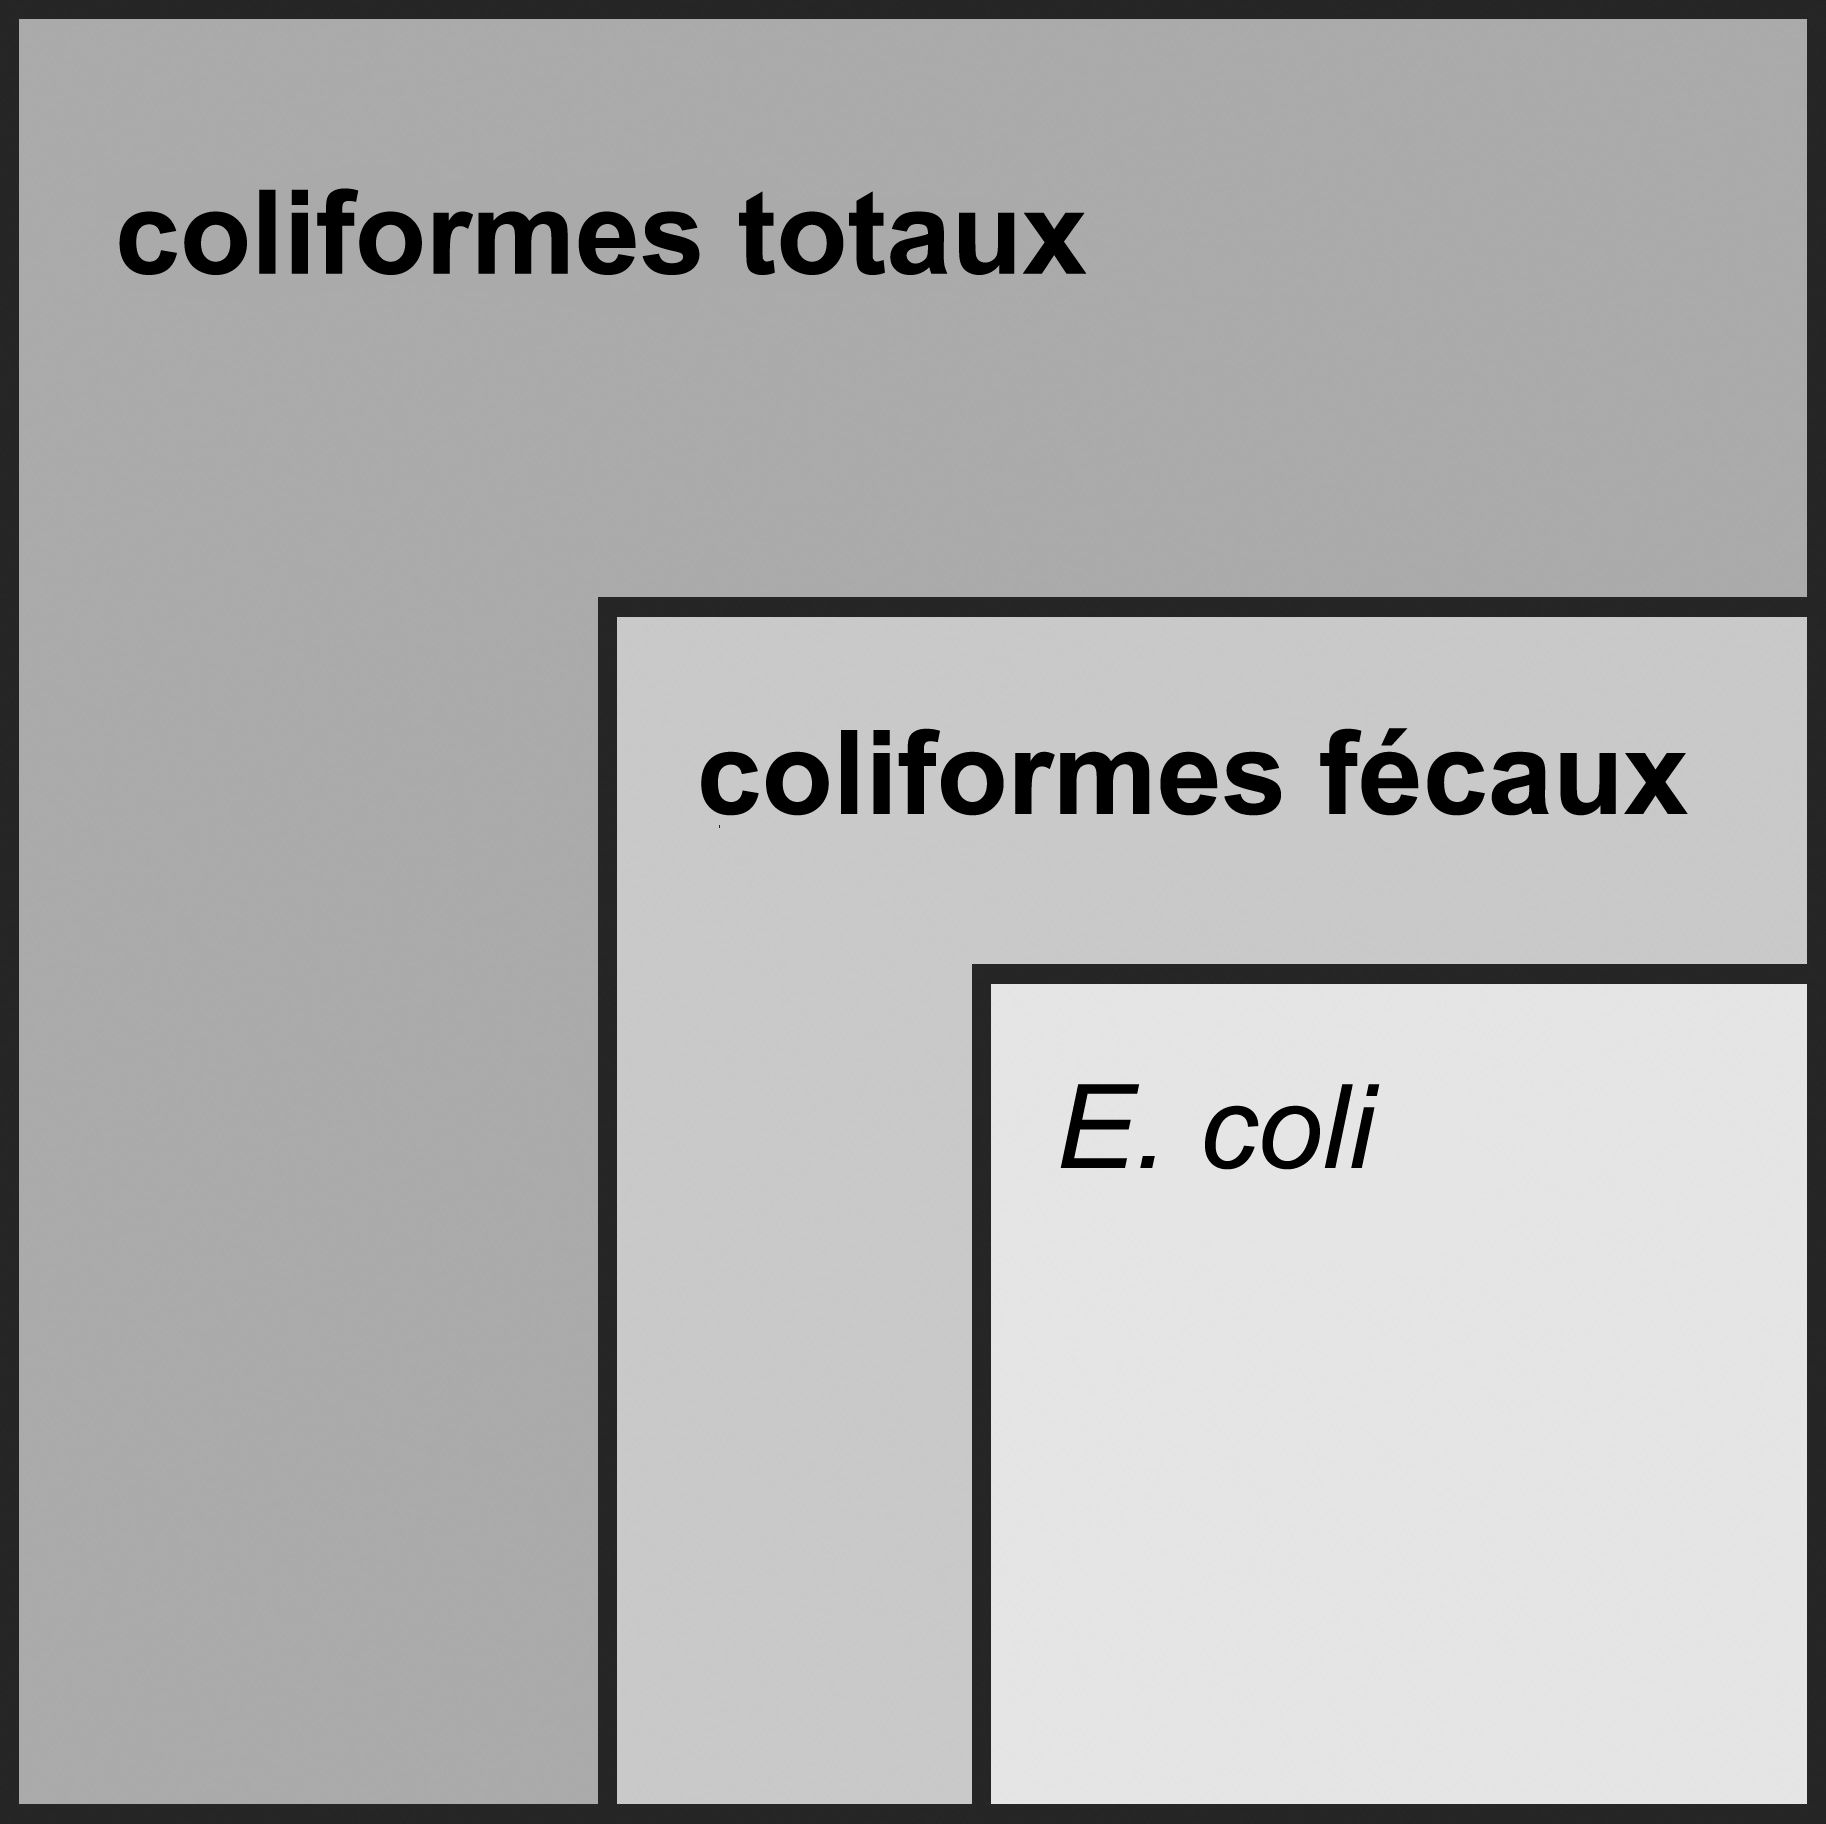 Un graphique montrant que les coliformes totaux sont constitués de coliformes fécaux et d'E. Coli